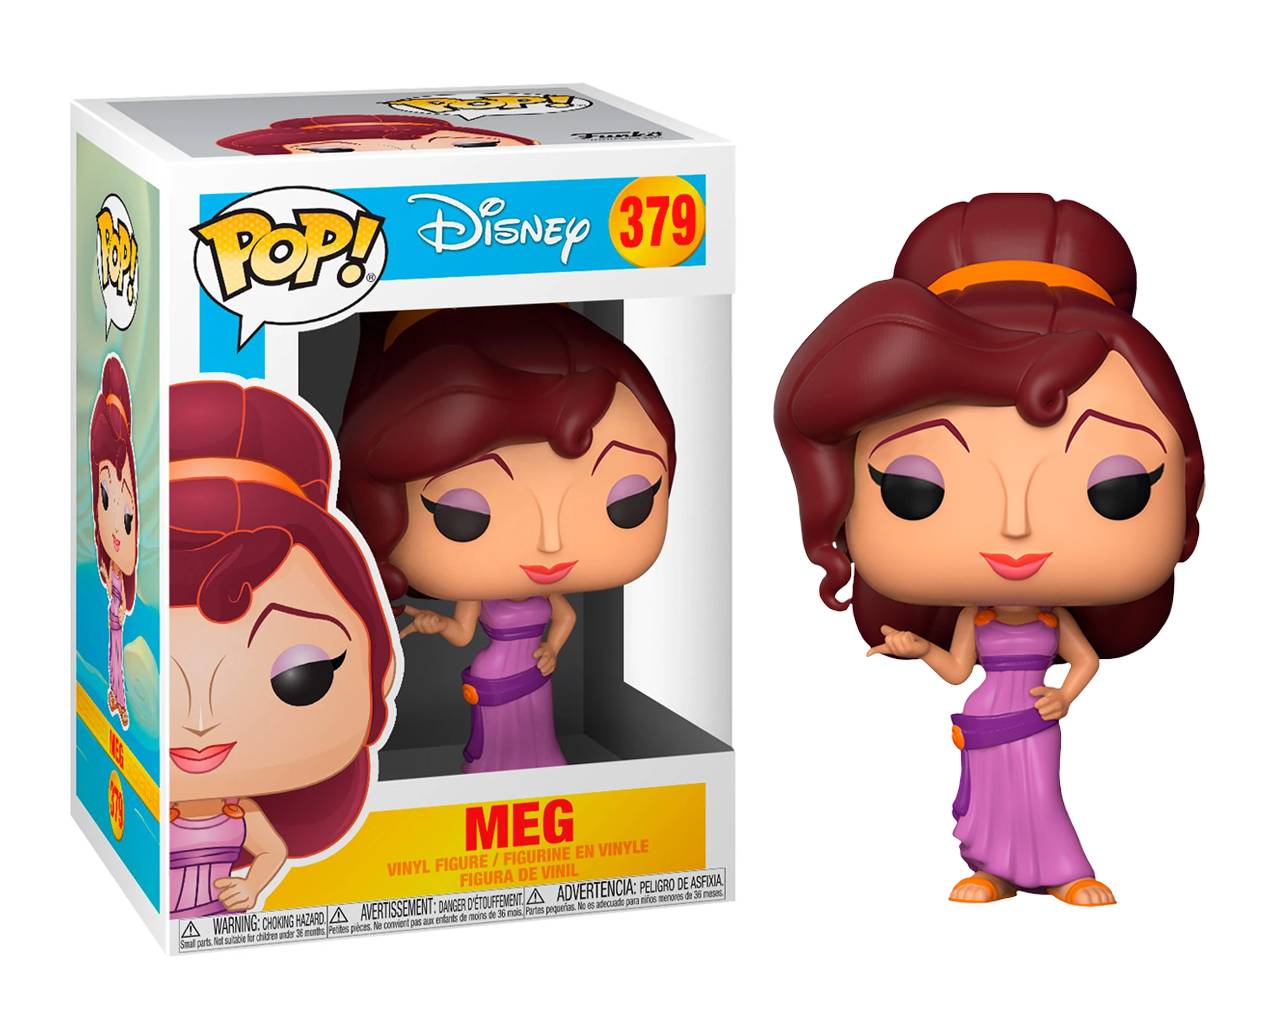 Meg - Disney Hercules Pop! Vinyl